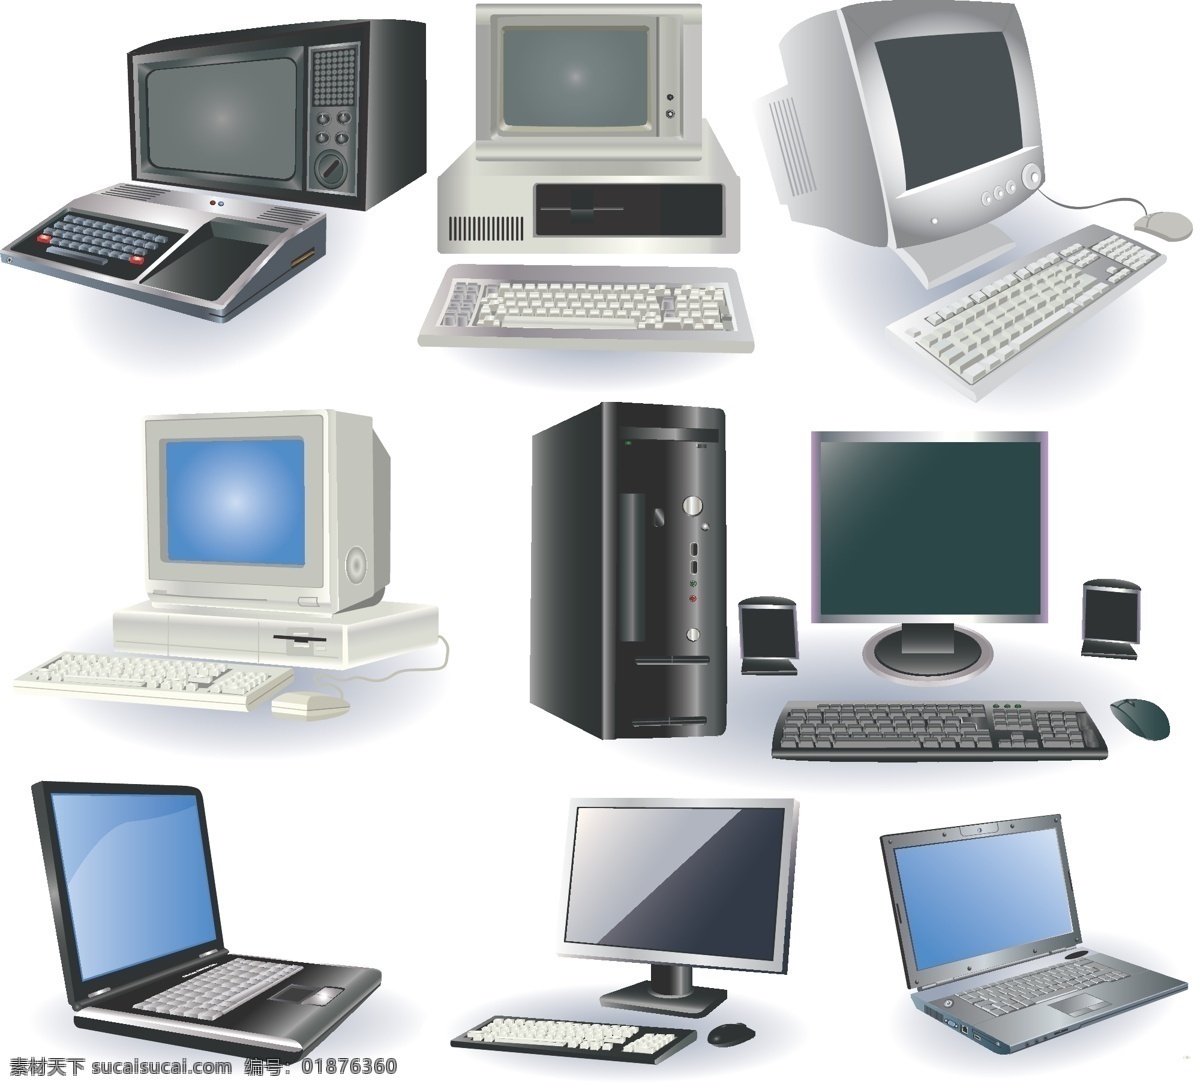 电脑 相关 产品设计 矢量图 笔记本 产品 键盘 鼠标 显示器 音响 机箱 其他矢量图